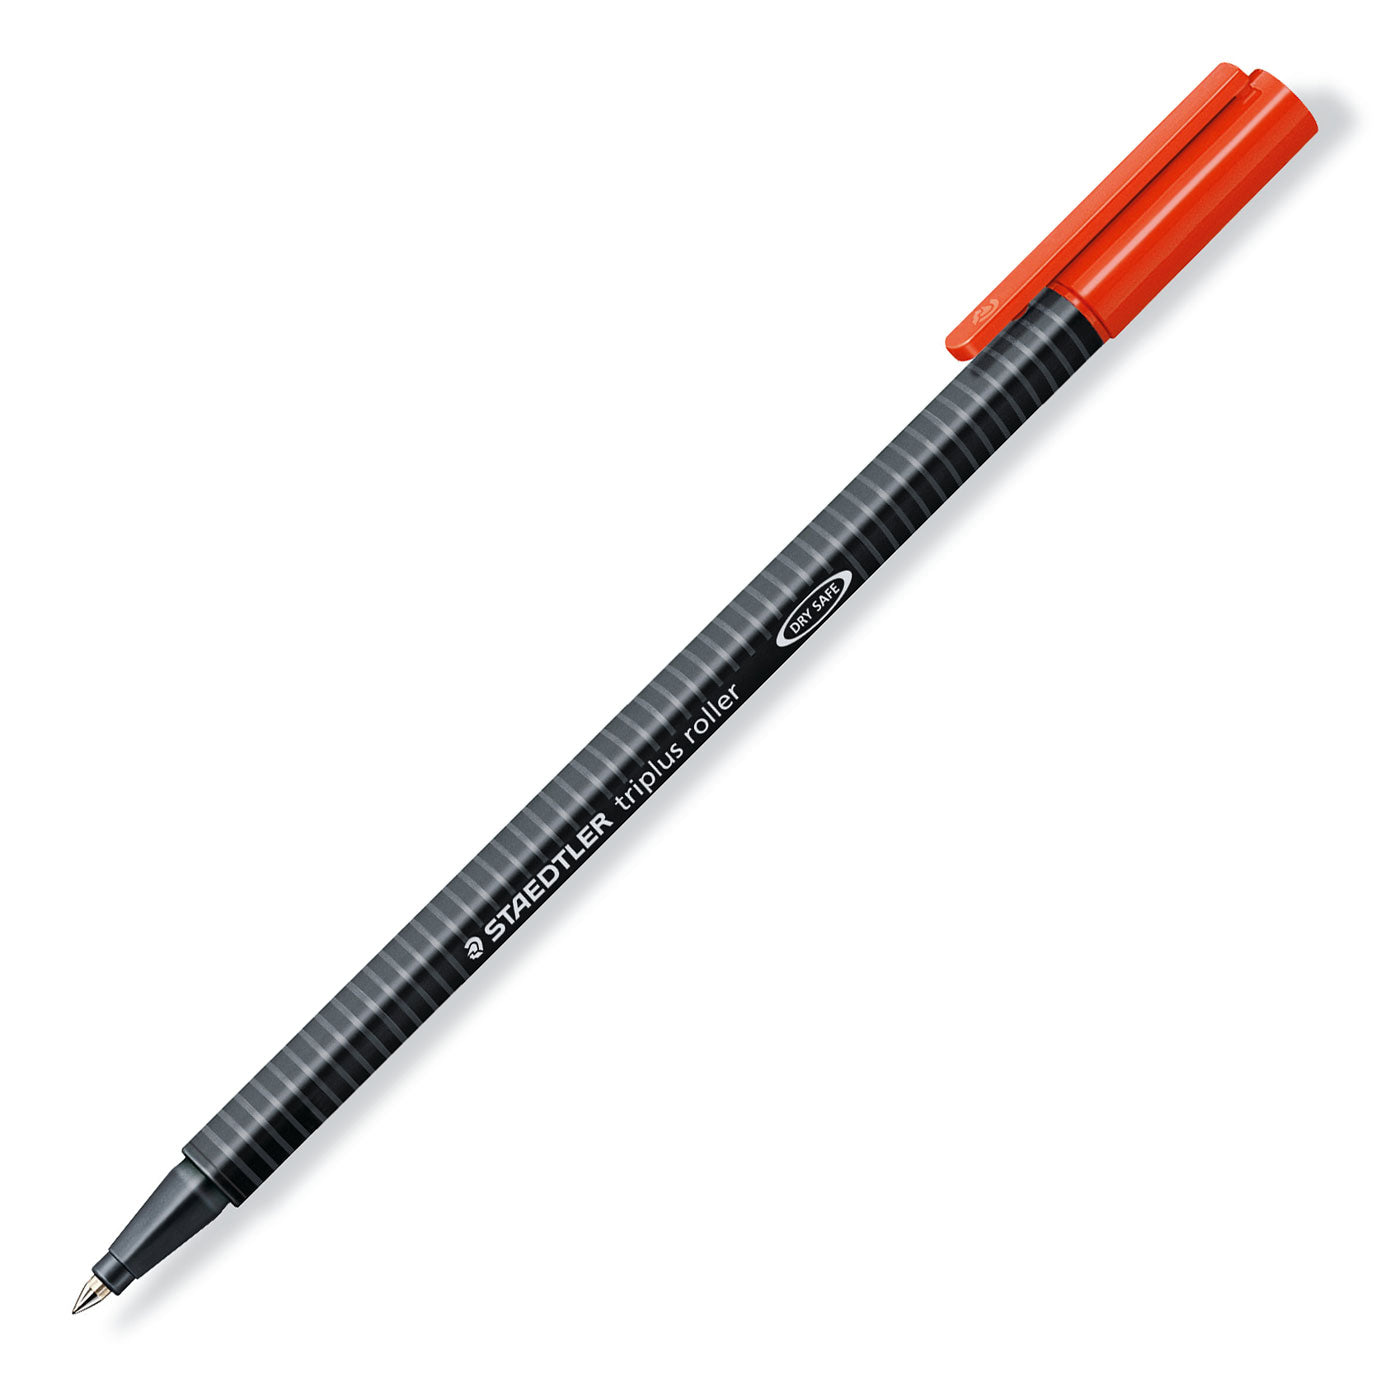 Artworx artworx 72 felt tip pens - markers for kids - premium